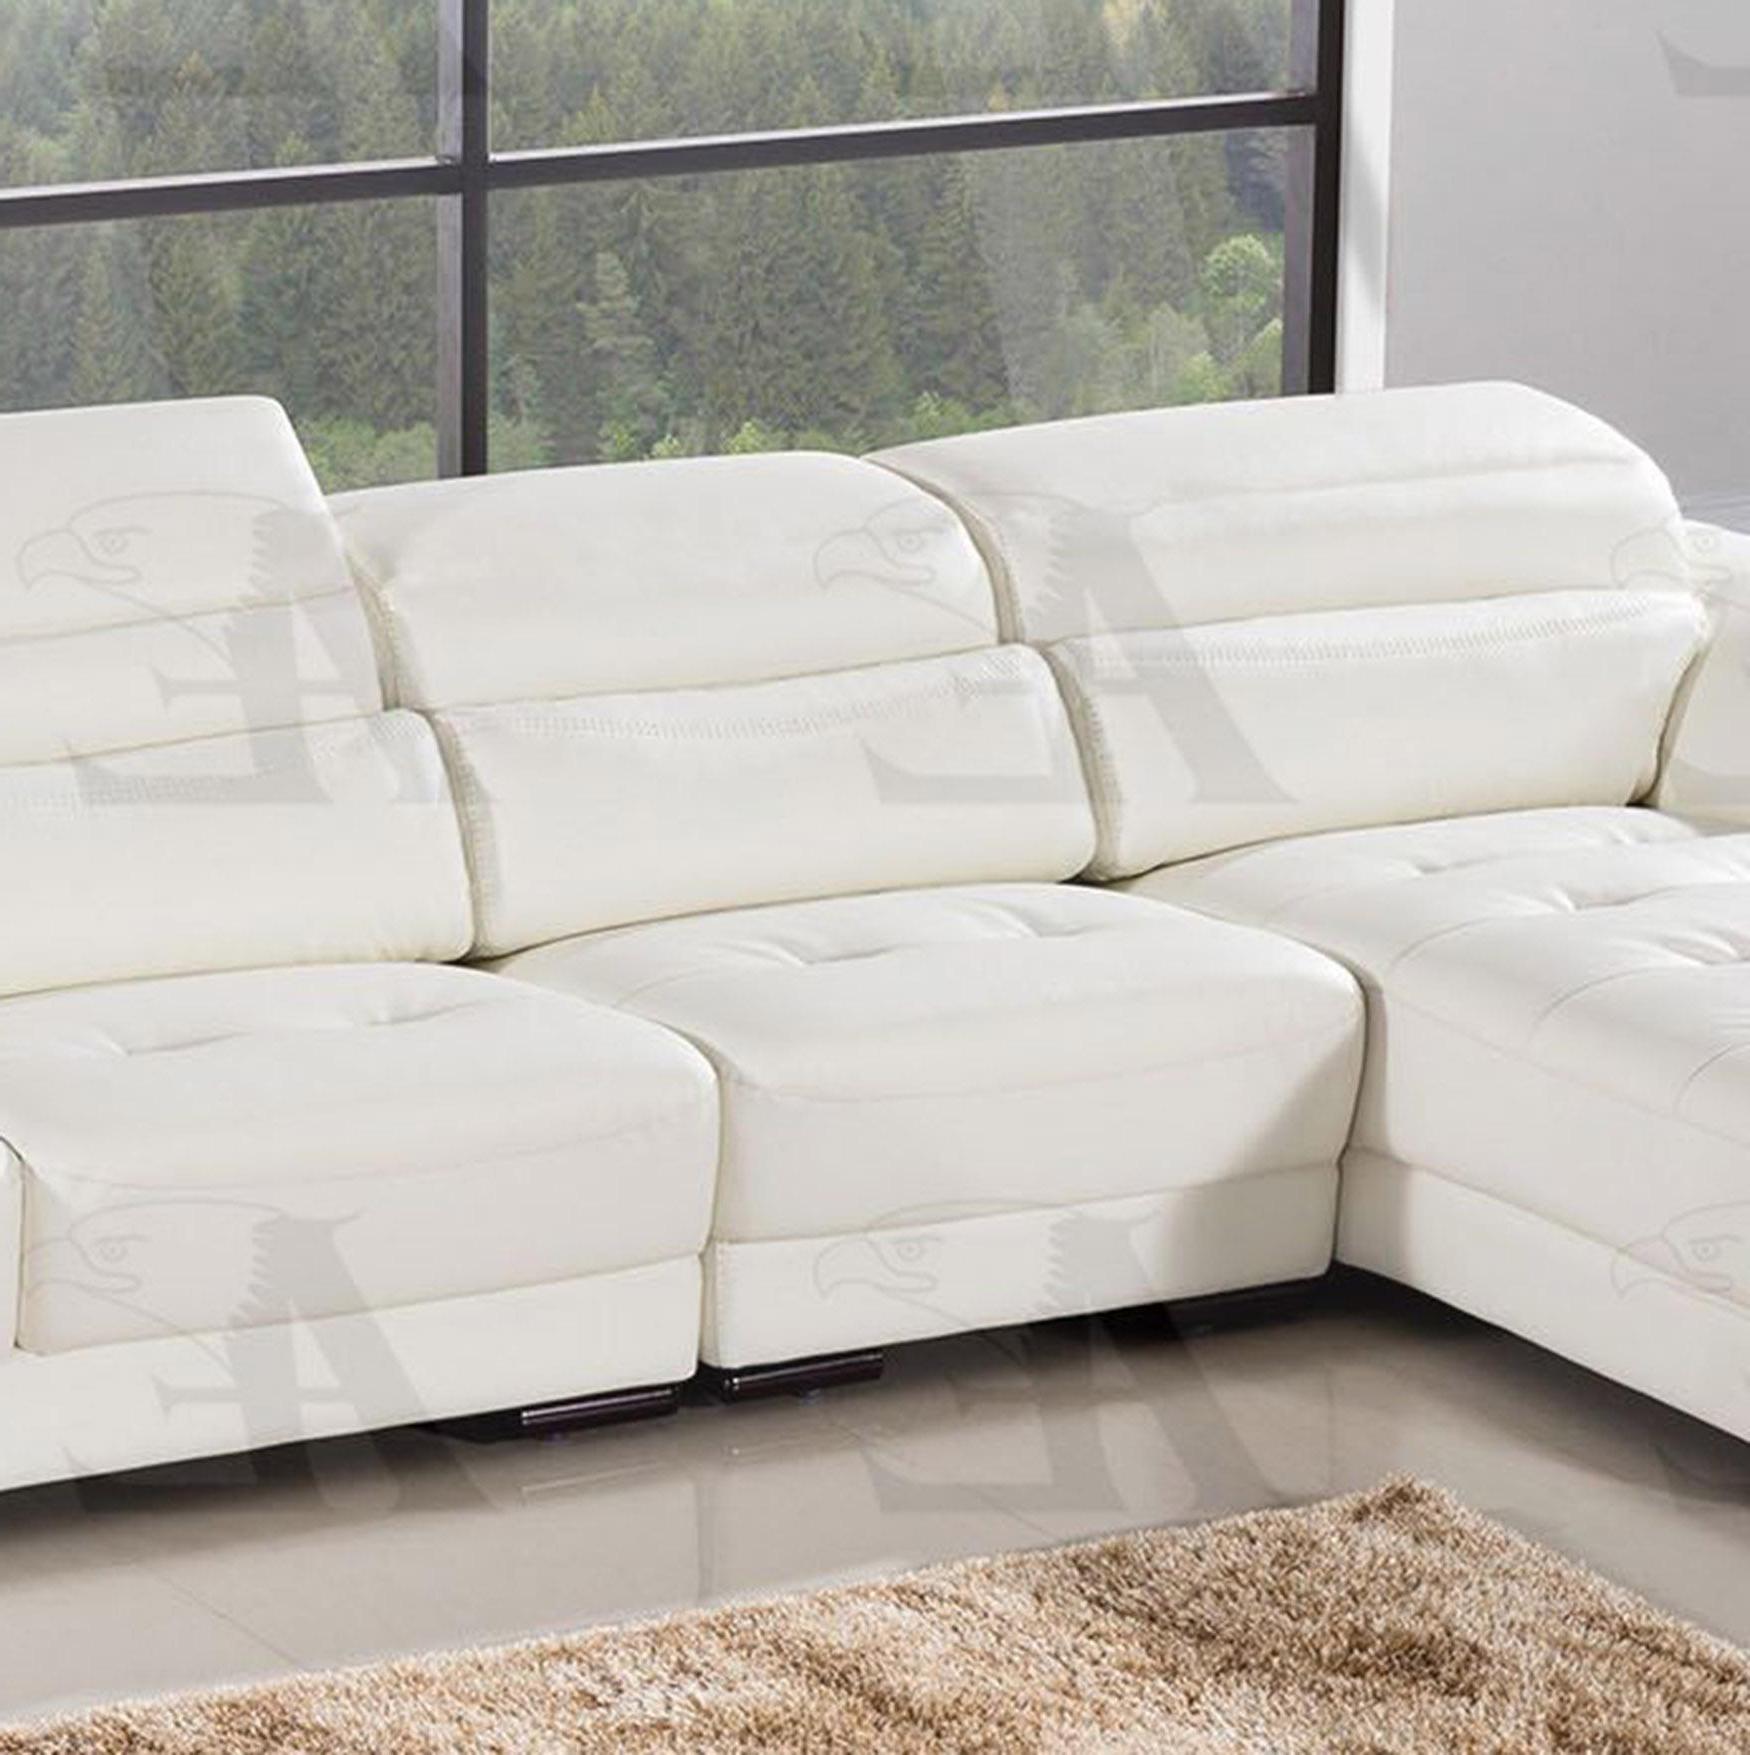 

    
American Eagle Furniture EK-LB309-W Sectional Sofa White EK-LB309-W Set-3 RHC
